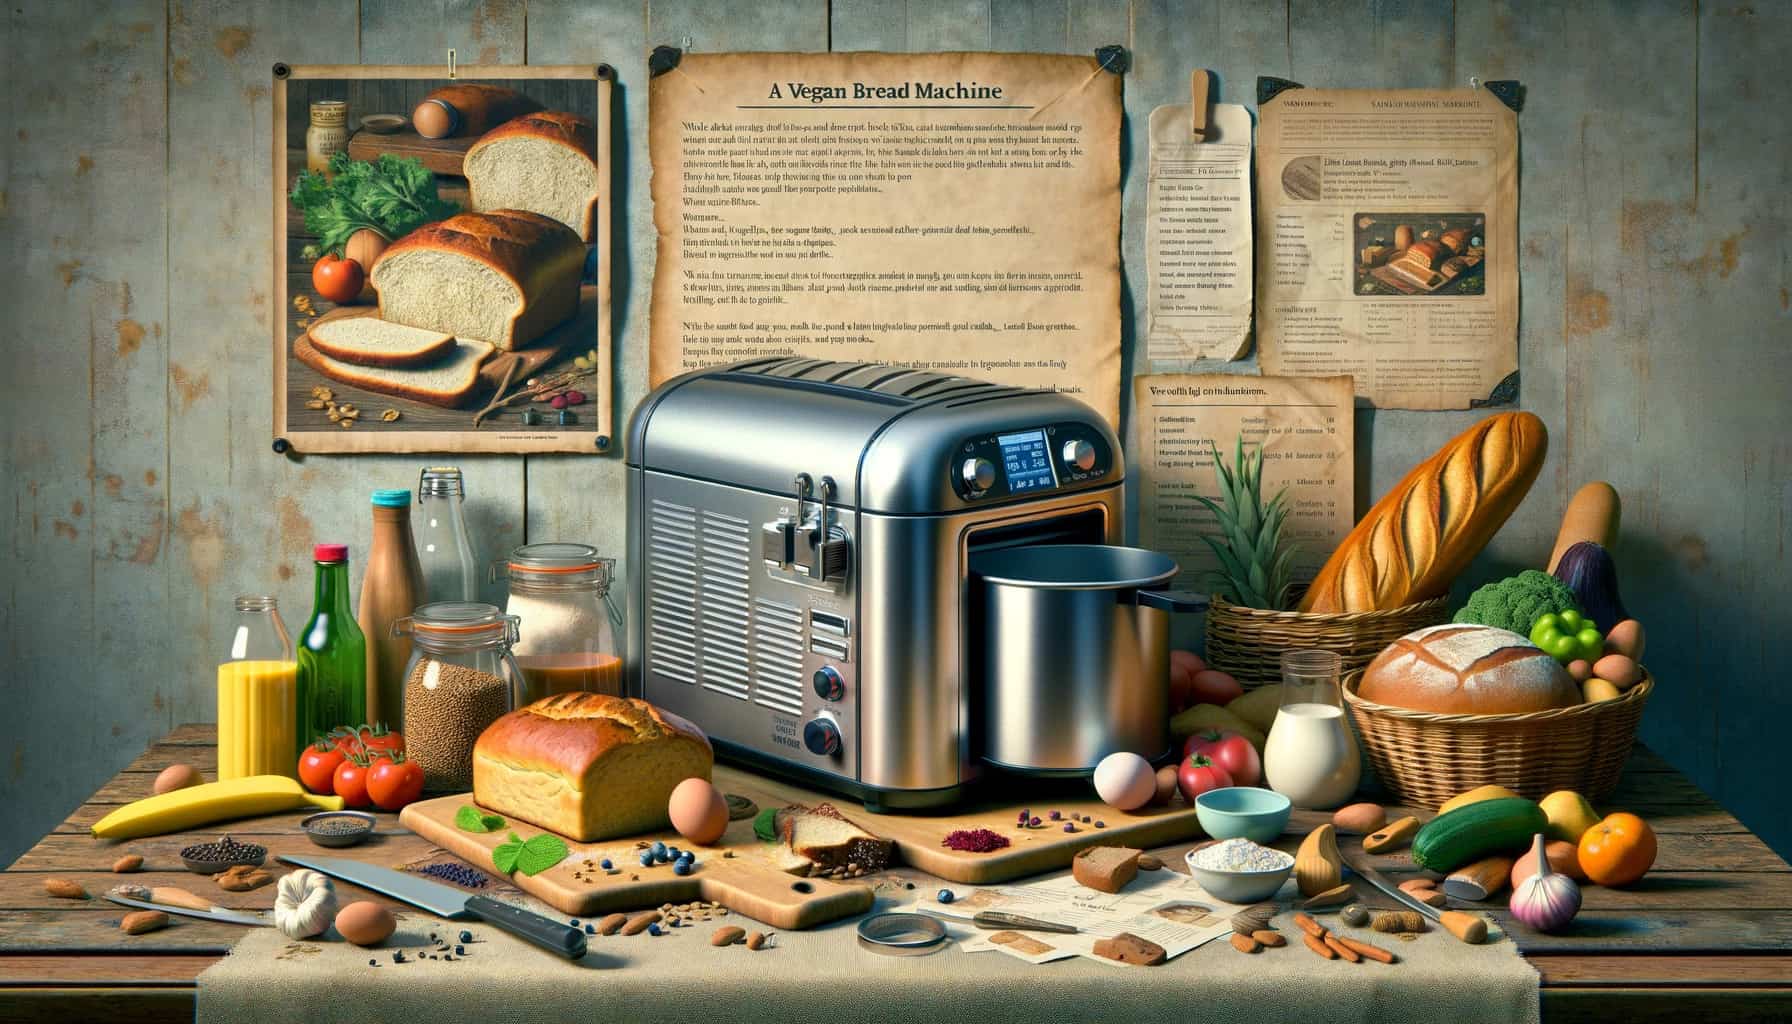 Vegan bread machine recipe